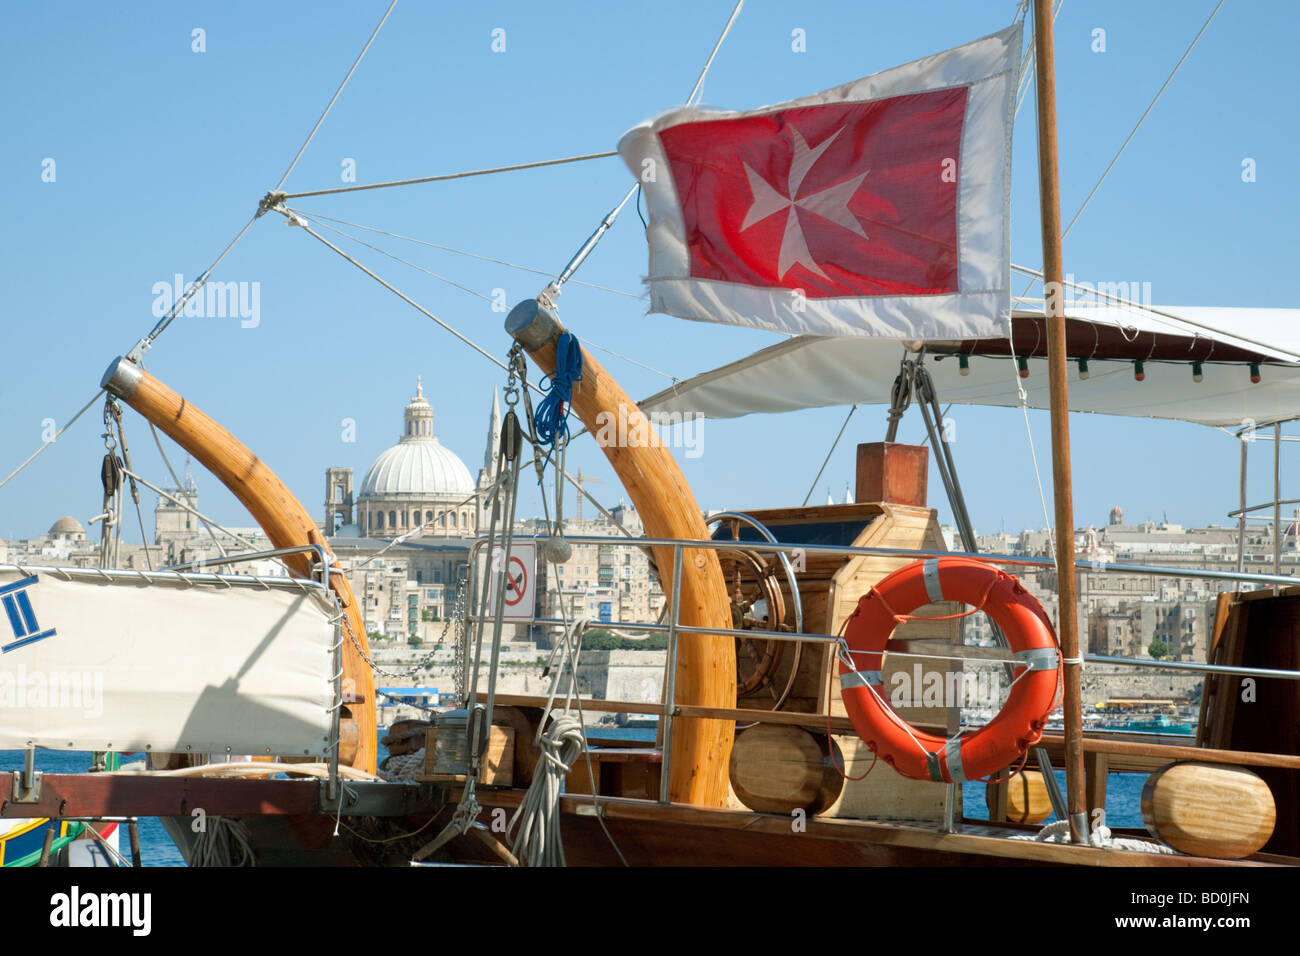 La croce di malta bandiera a bordo di una barca a vela con La Valletta in background, Malta Foto Stock